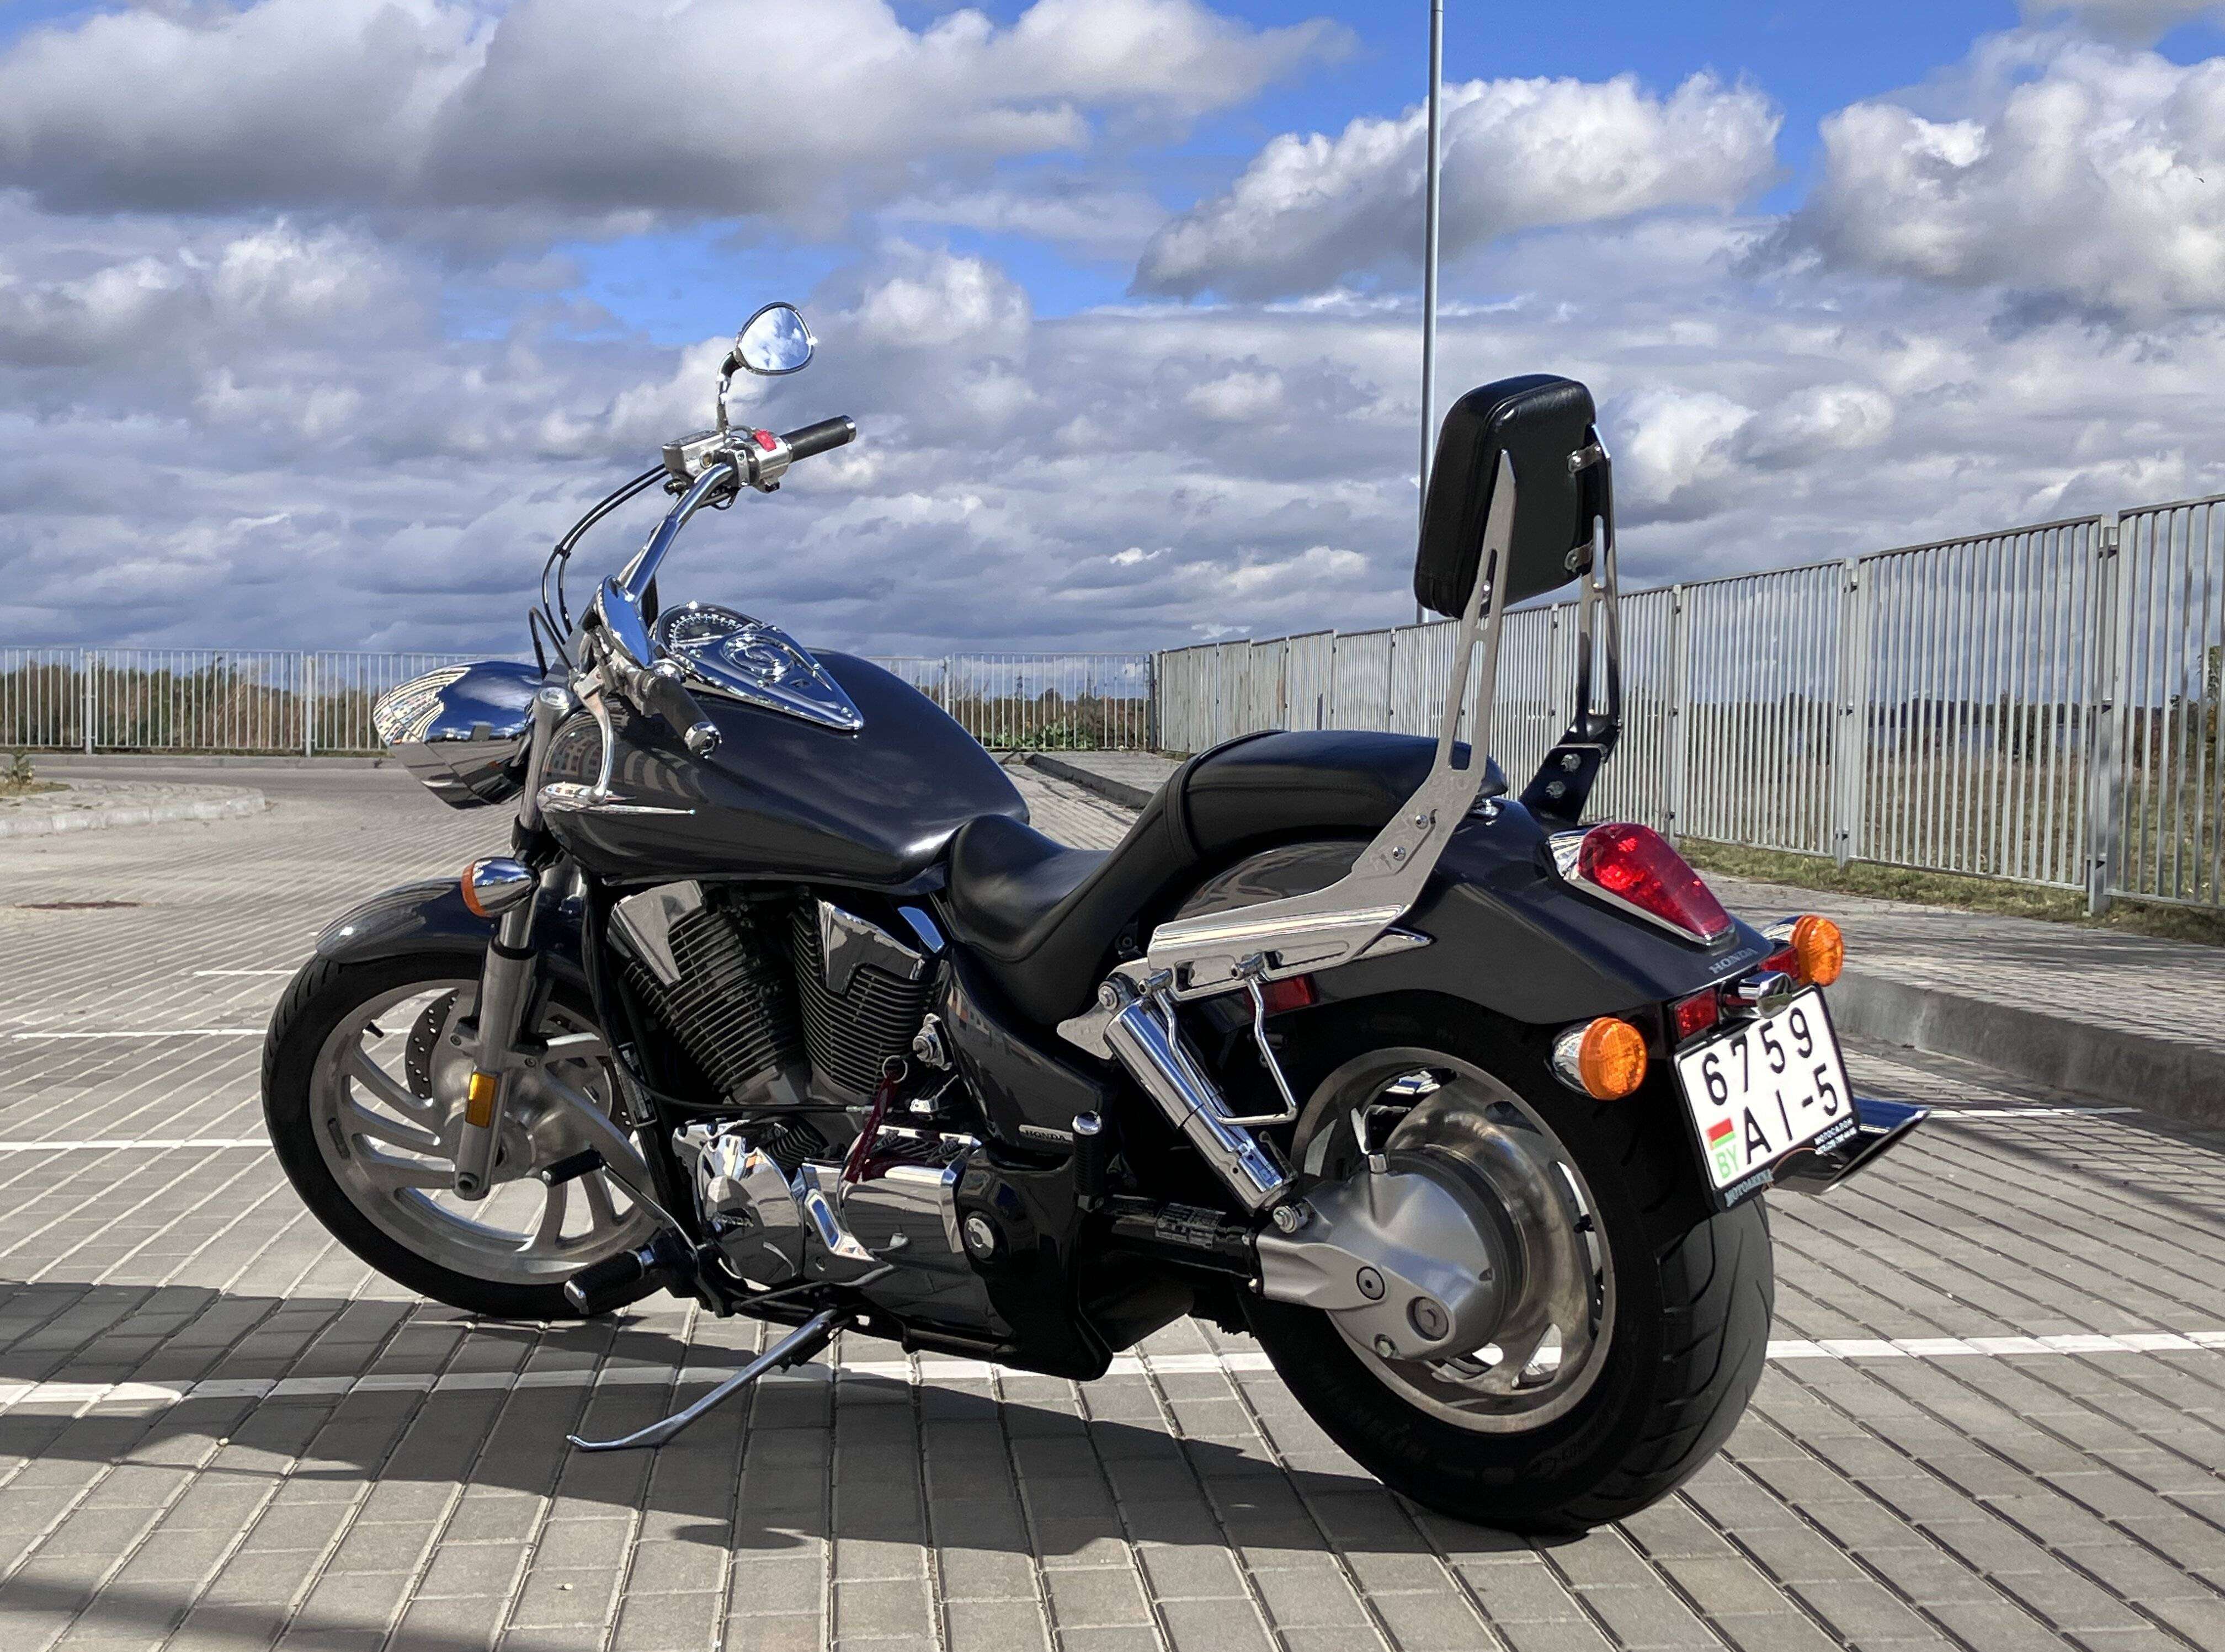 Купить мотоцикл Honda в Беларуси в кредит - цены, характеристики, фото. 